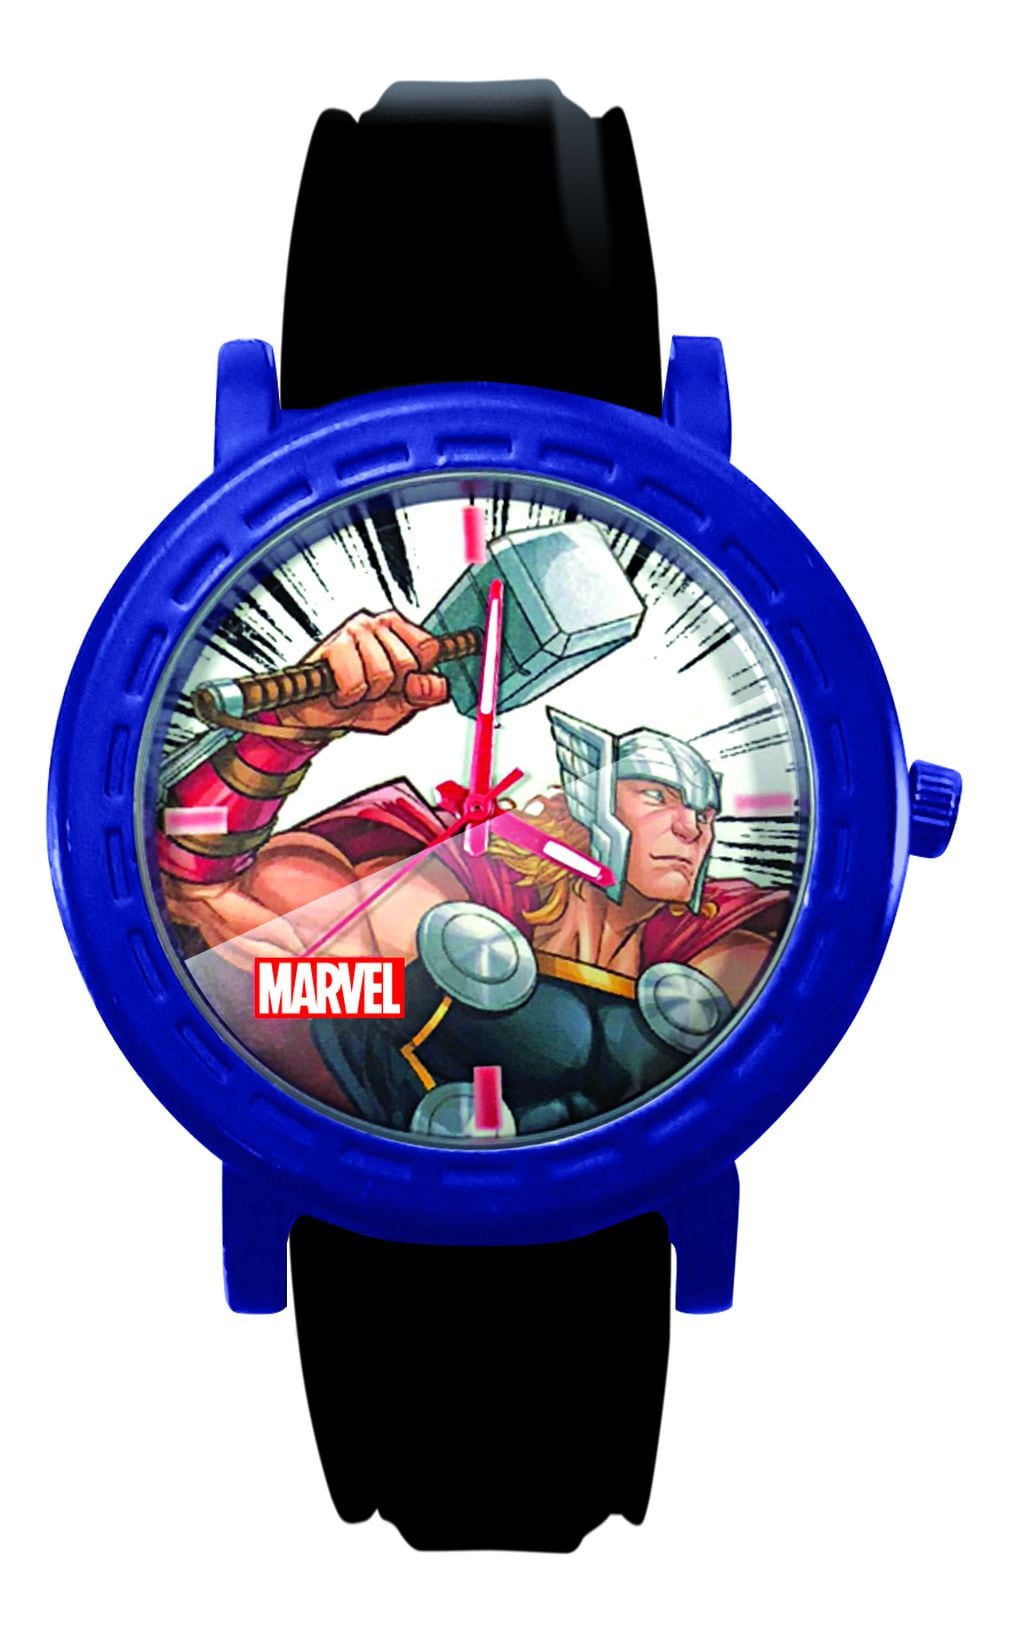 Esta semana buscá el reloj número 6 Thor.